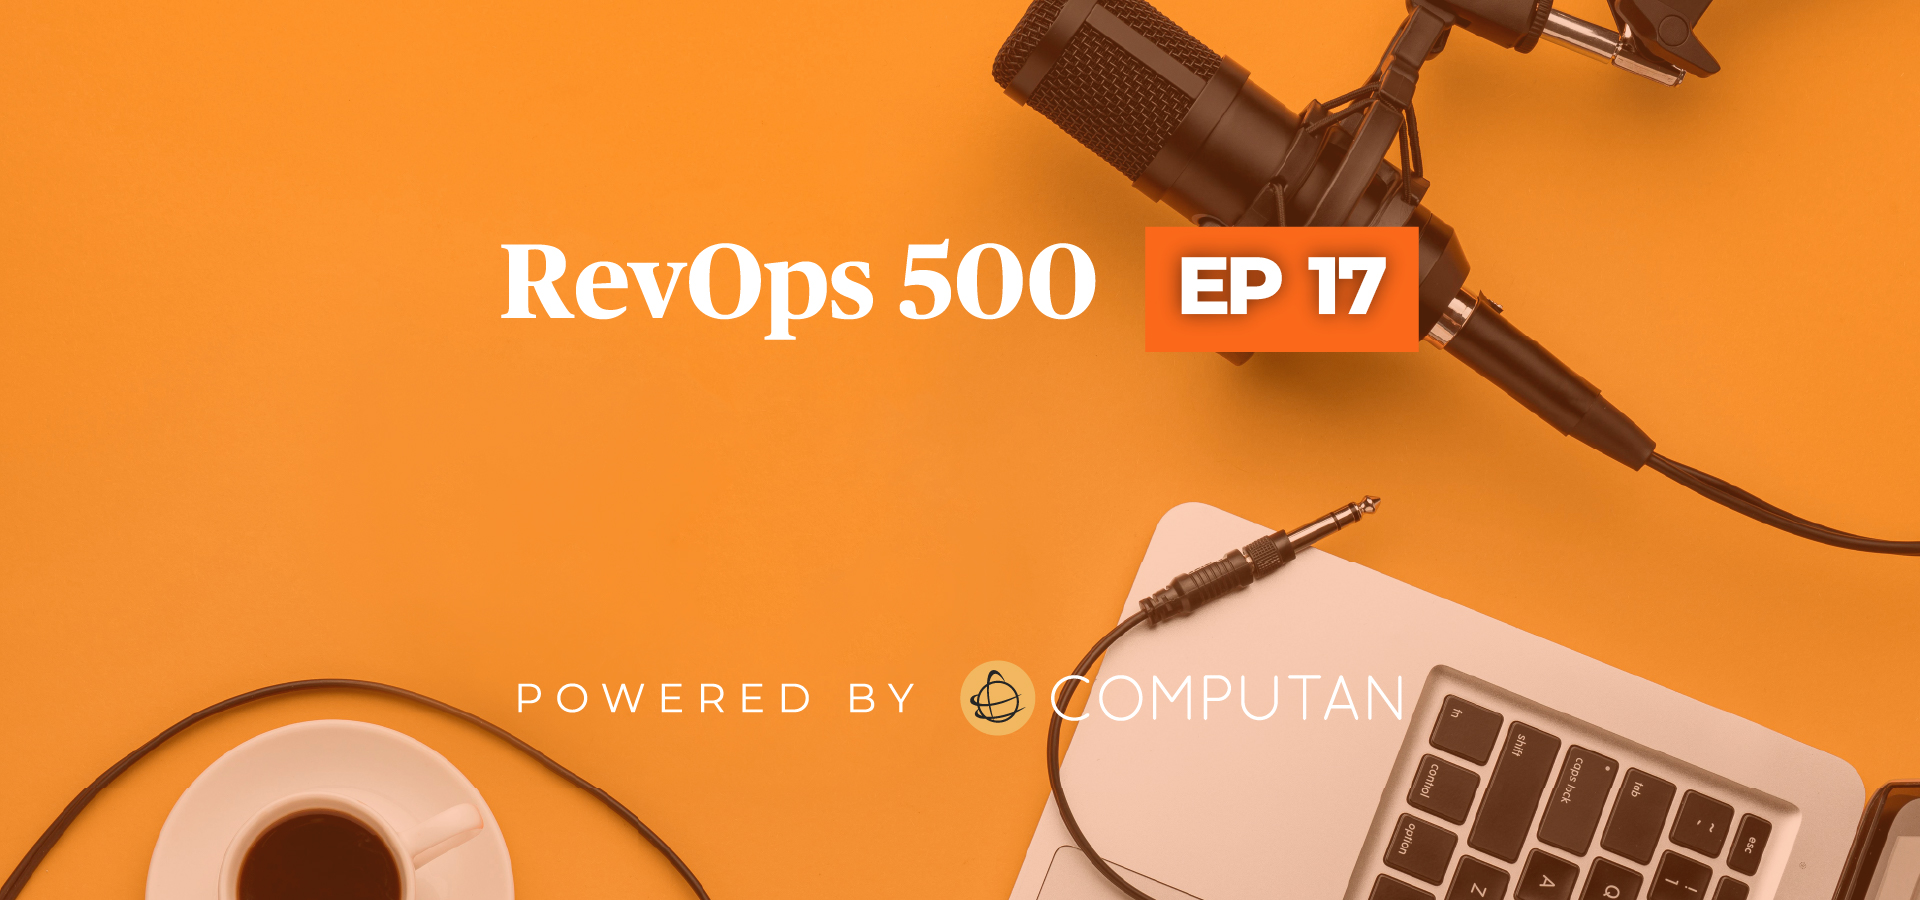 RevOps 500 Episode 17